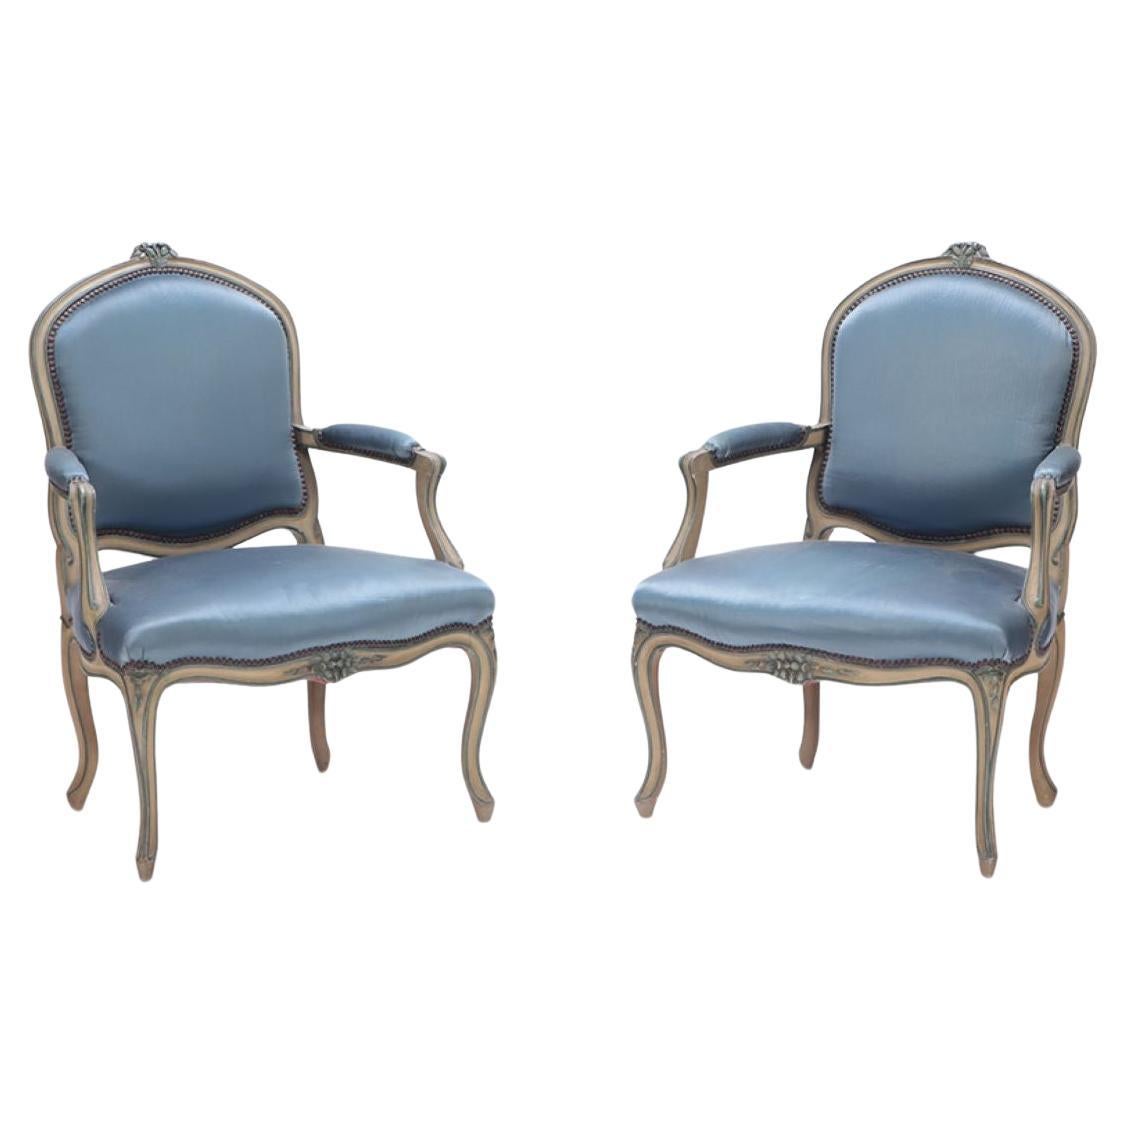 Paire de fauteuils ouverts de style Louis XV avec des cadres sculptés vers 1920.